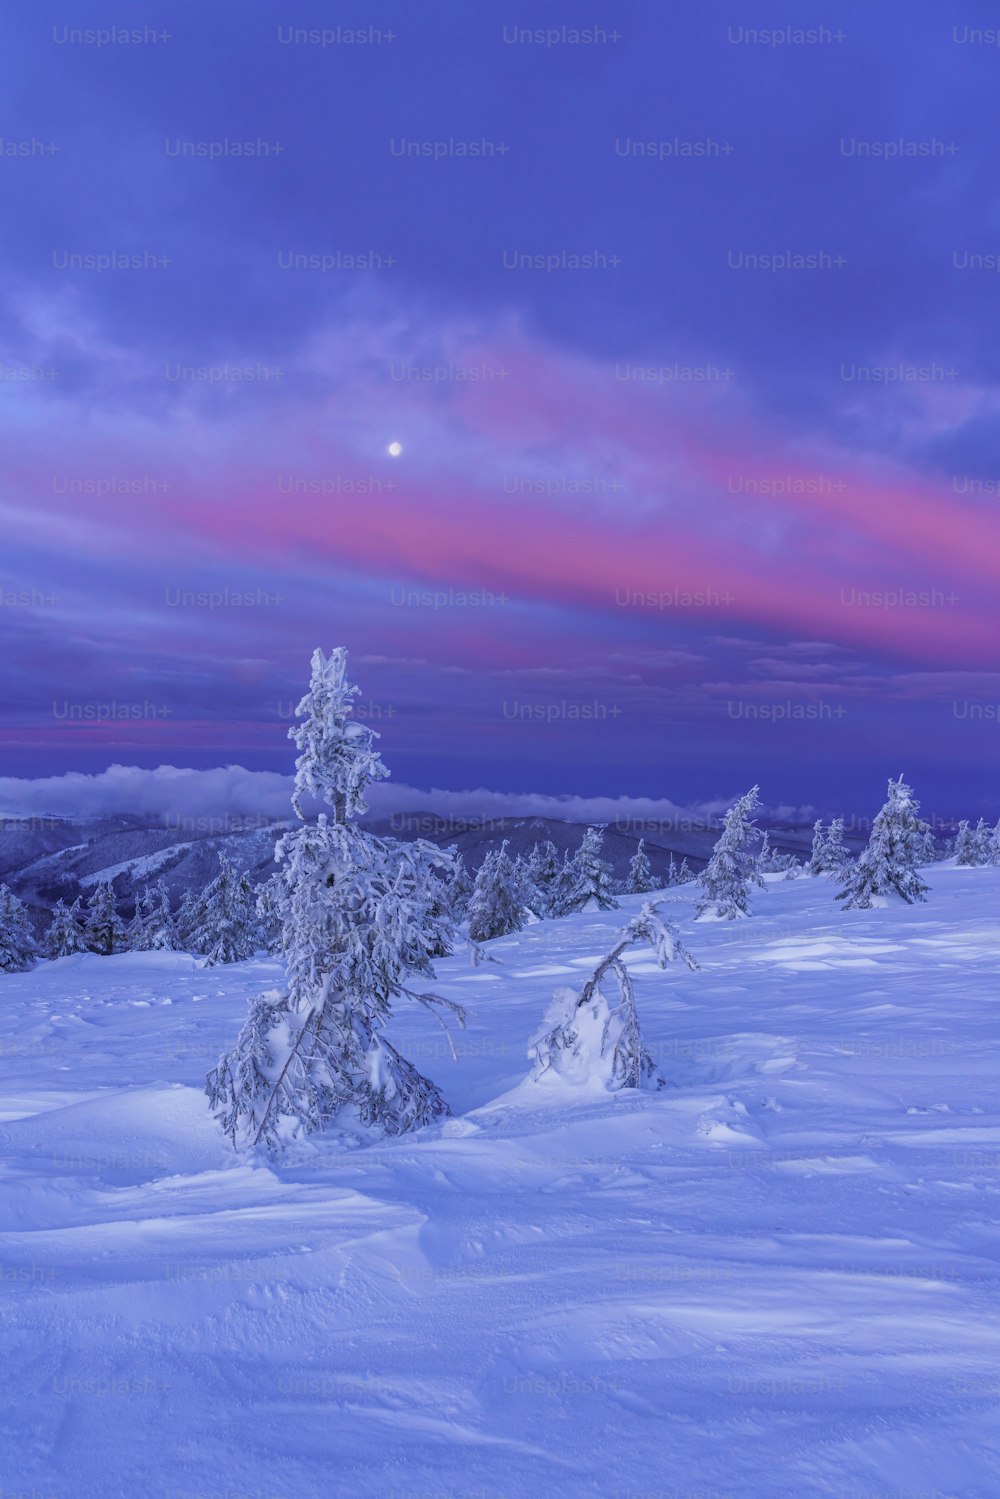 Un paisaje nevado con árboles y un cielo rosado